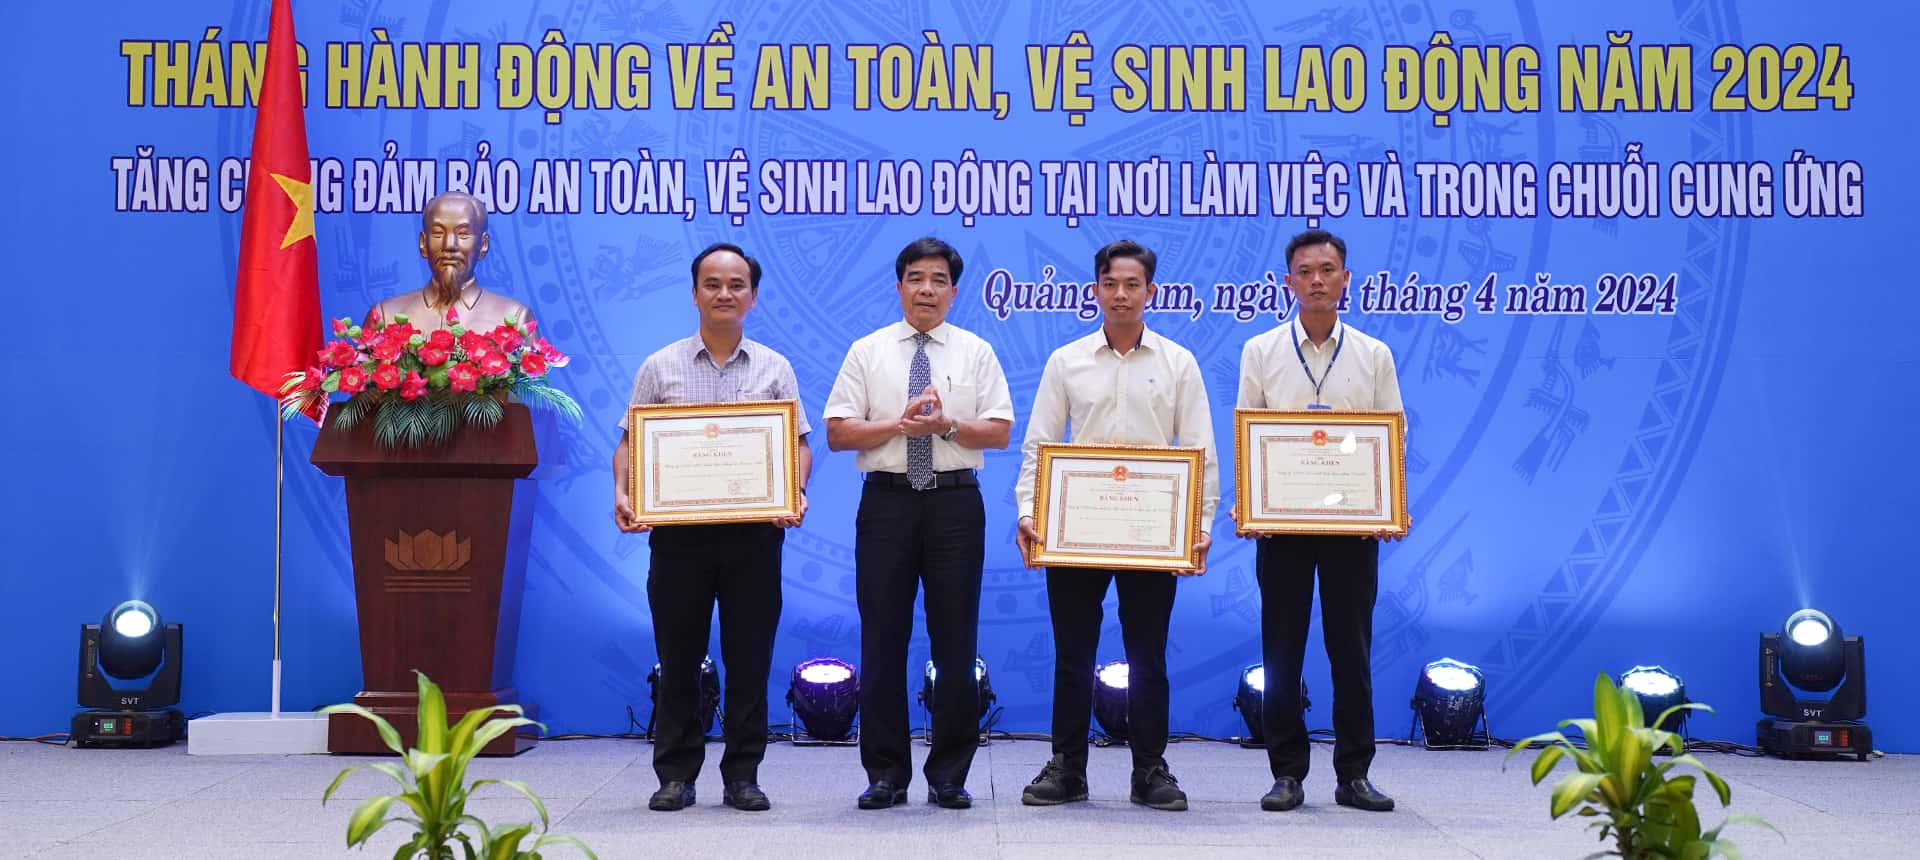 Công ty THACO Luxury Car và Công ty sản xuất Linh kiện nhựa THACO được UBND tỉnh Quảng Nam tặng bằng khen vì có nhiều đóng góp trong công tác ATVSLĐ